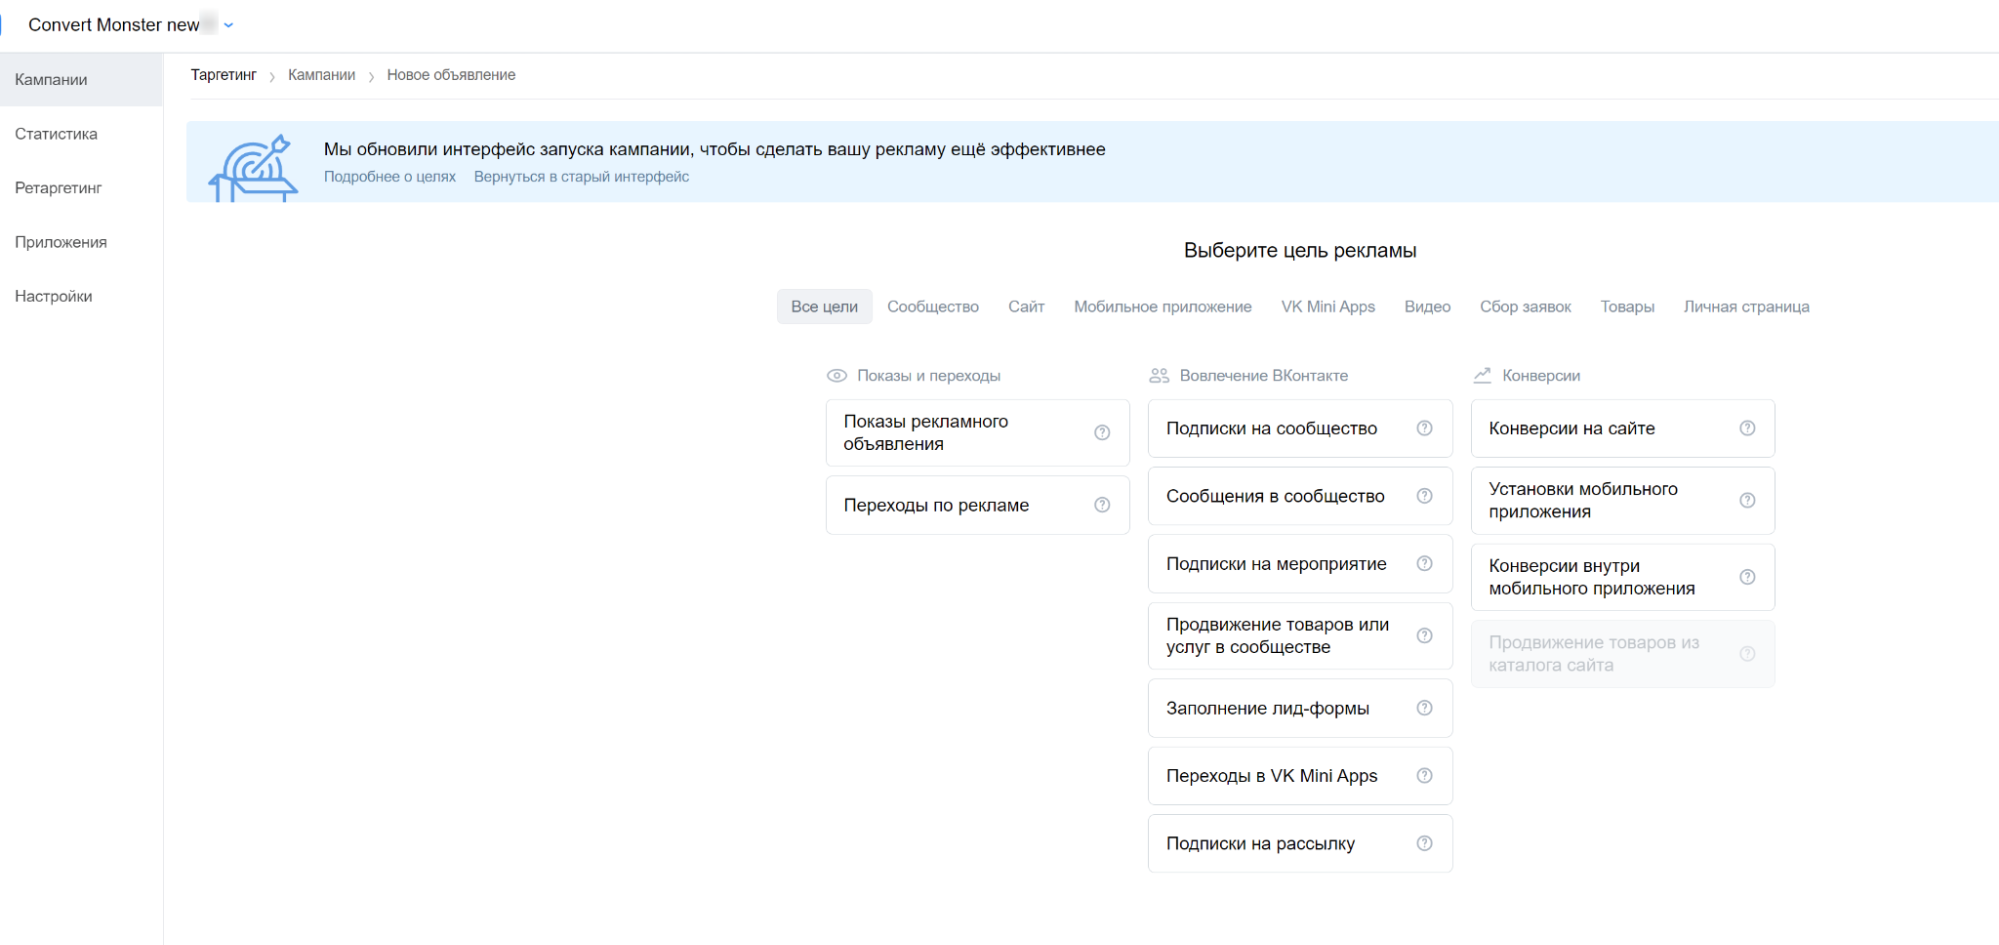 Обновленный интерфейс рекламного кабинета Вконтакте: что изменилось, а что осталось по-прежнему